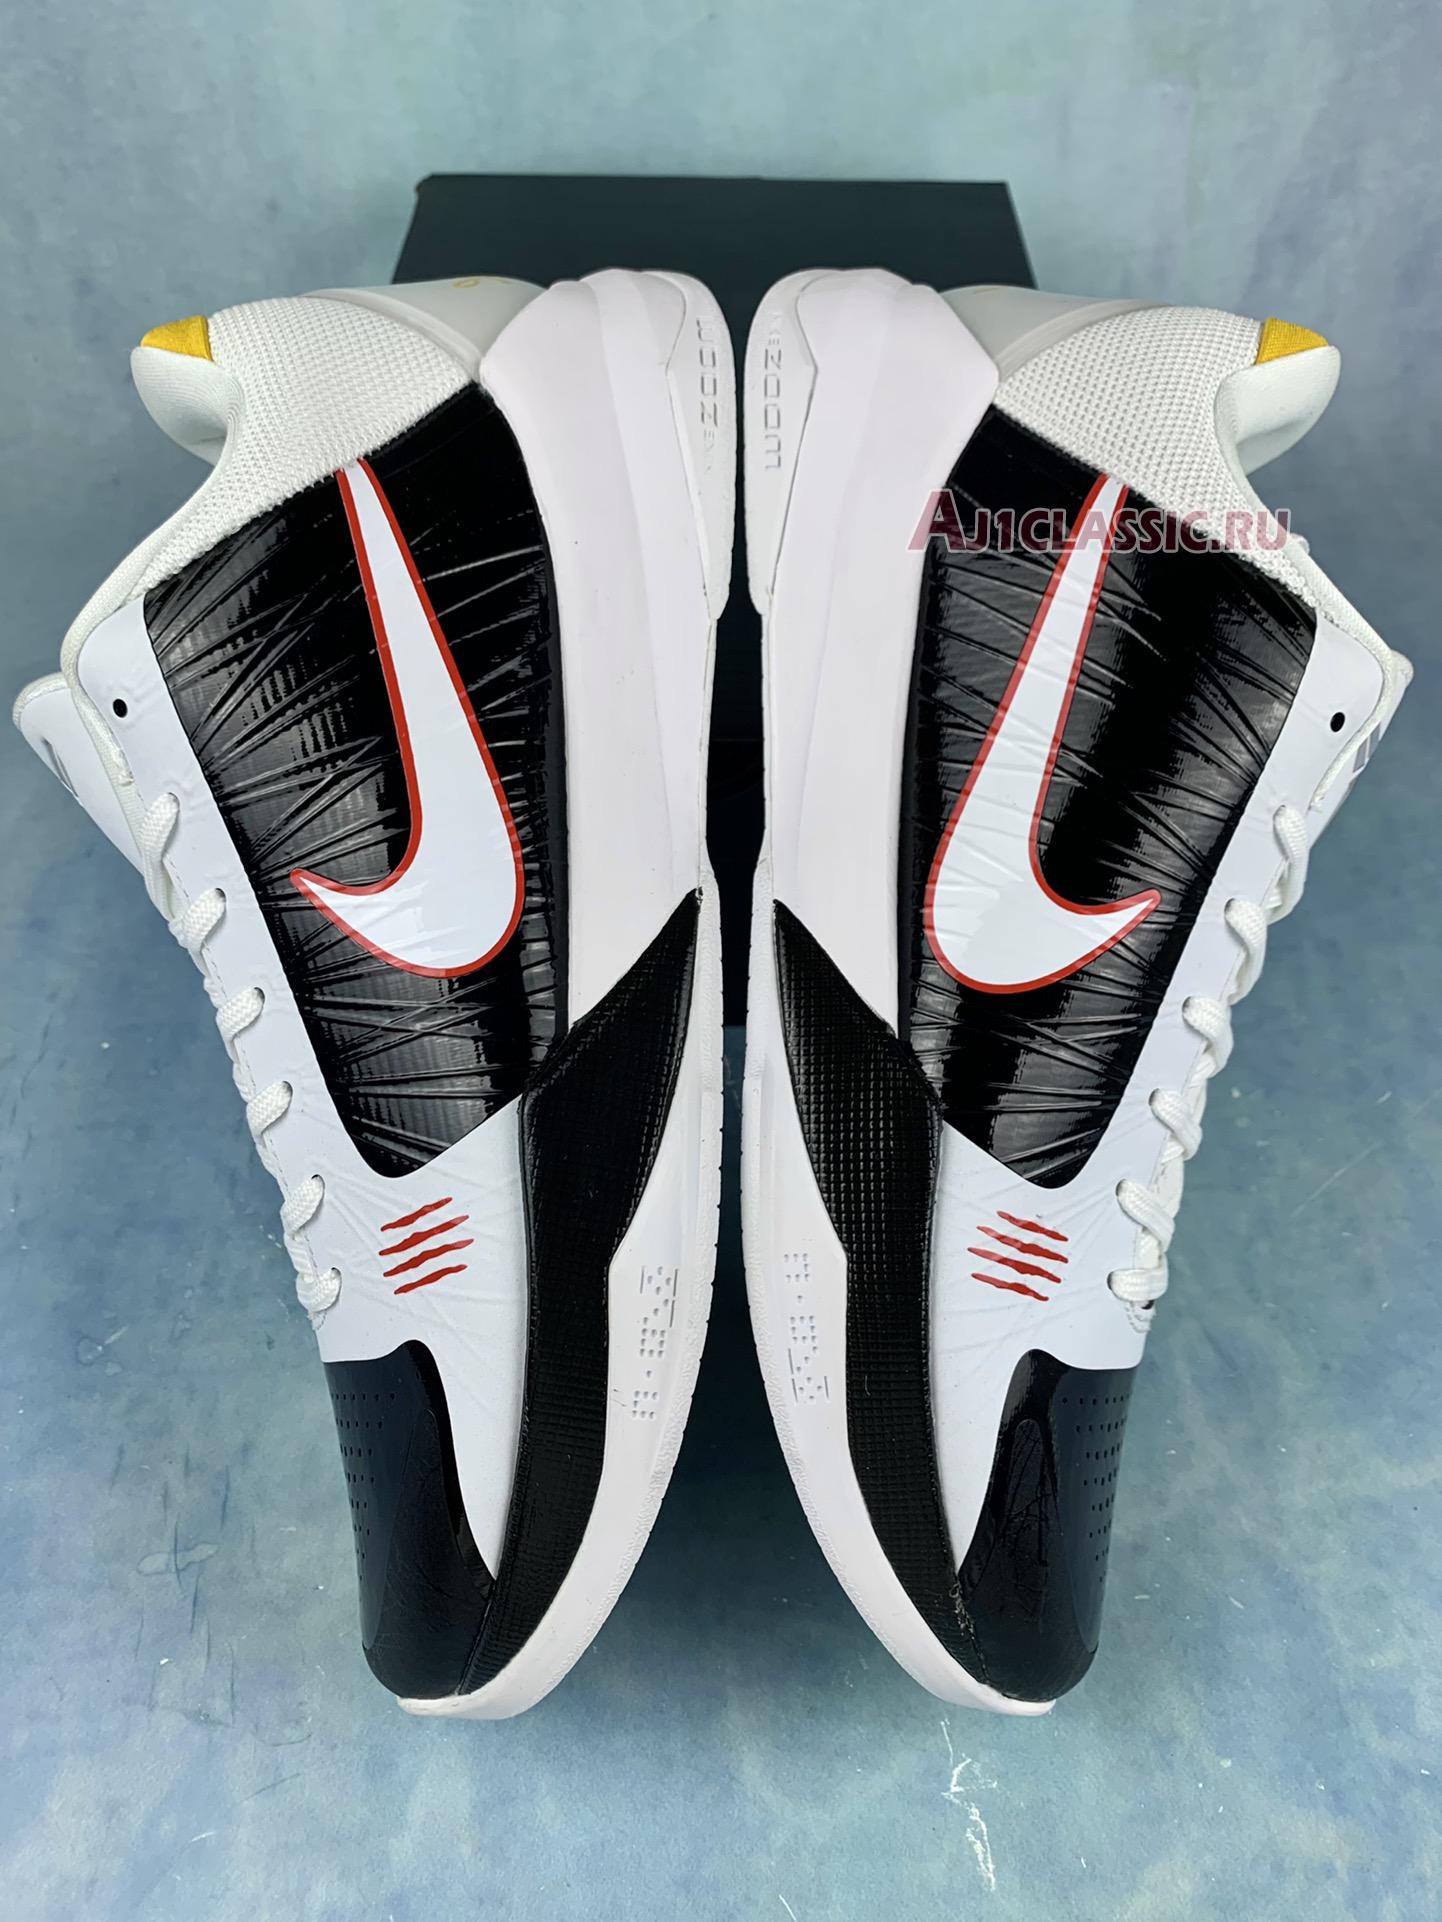 Nike Zoom Kobe 5 Protro "Alternate Bruce Lee" CD4991-101